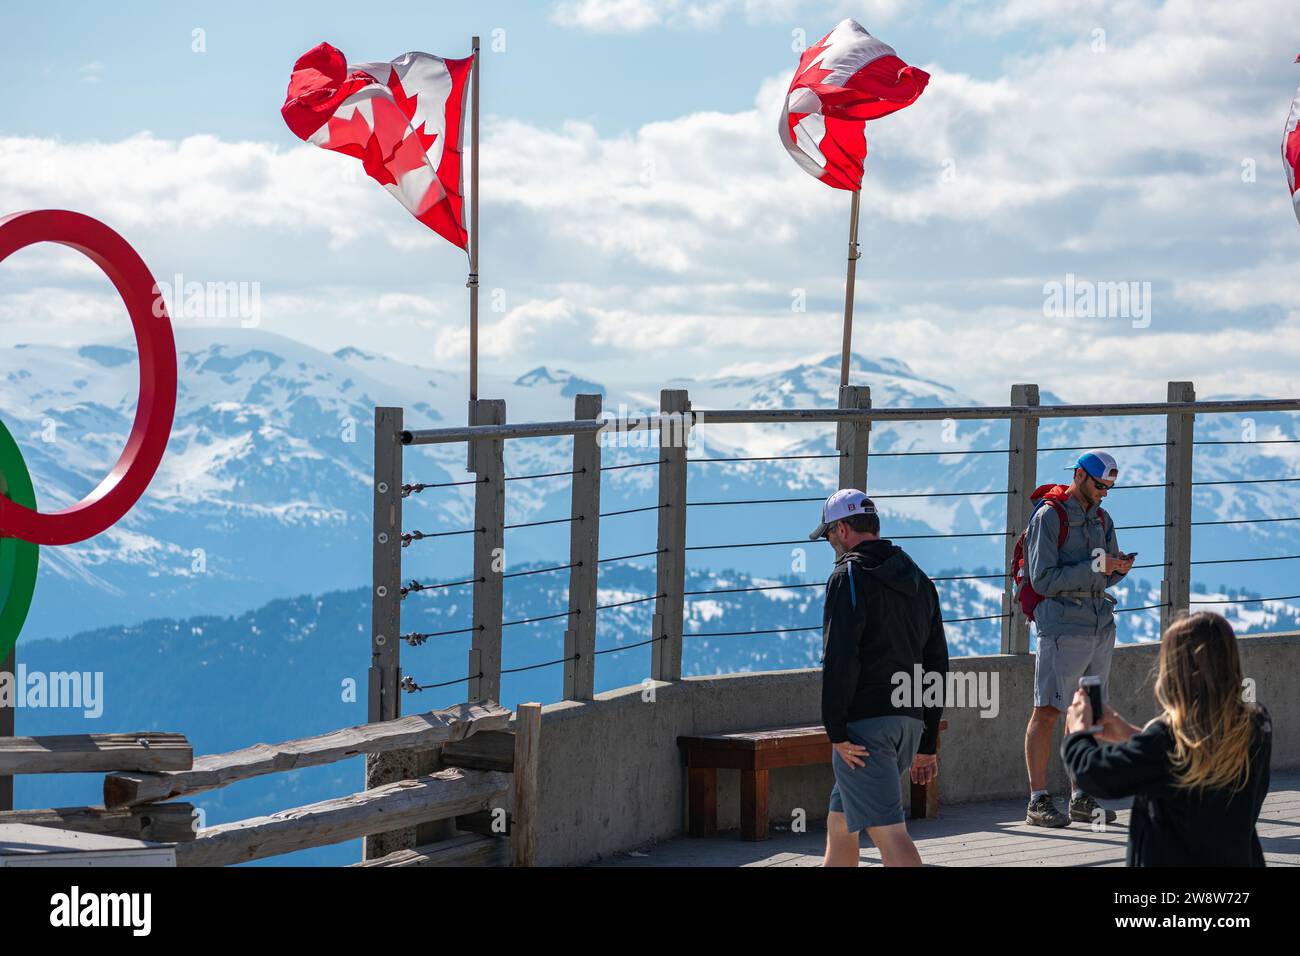 Besucher des Whistler Mountain bestaunen die raue Schönheit der Kanadischen Rocky Mountains, deren Nationalflagge Kanadas reiches Naturerbe symbolisiert. Stockfoto